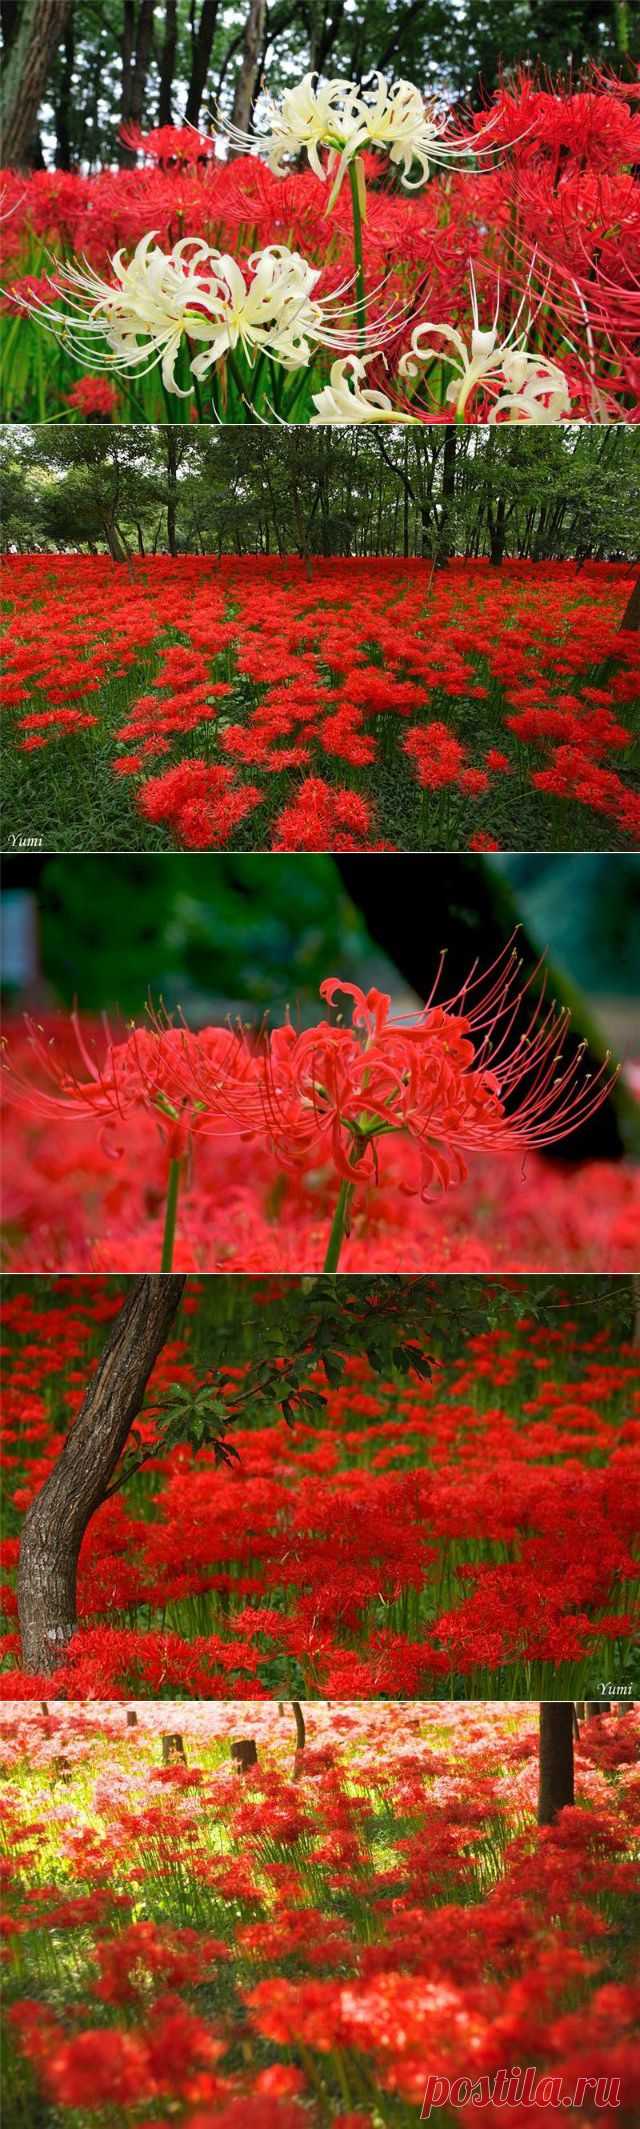 Красная паучья лилия